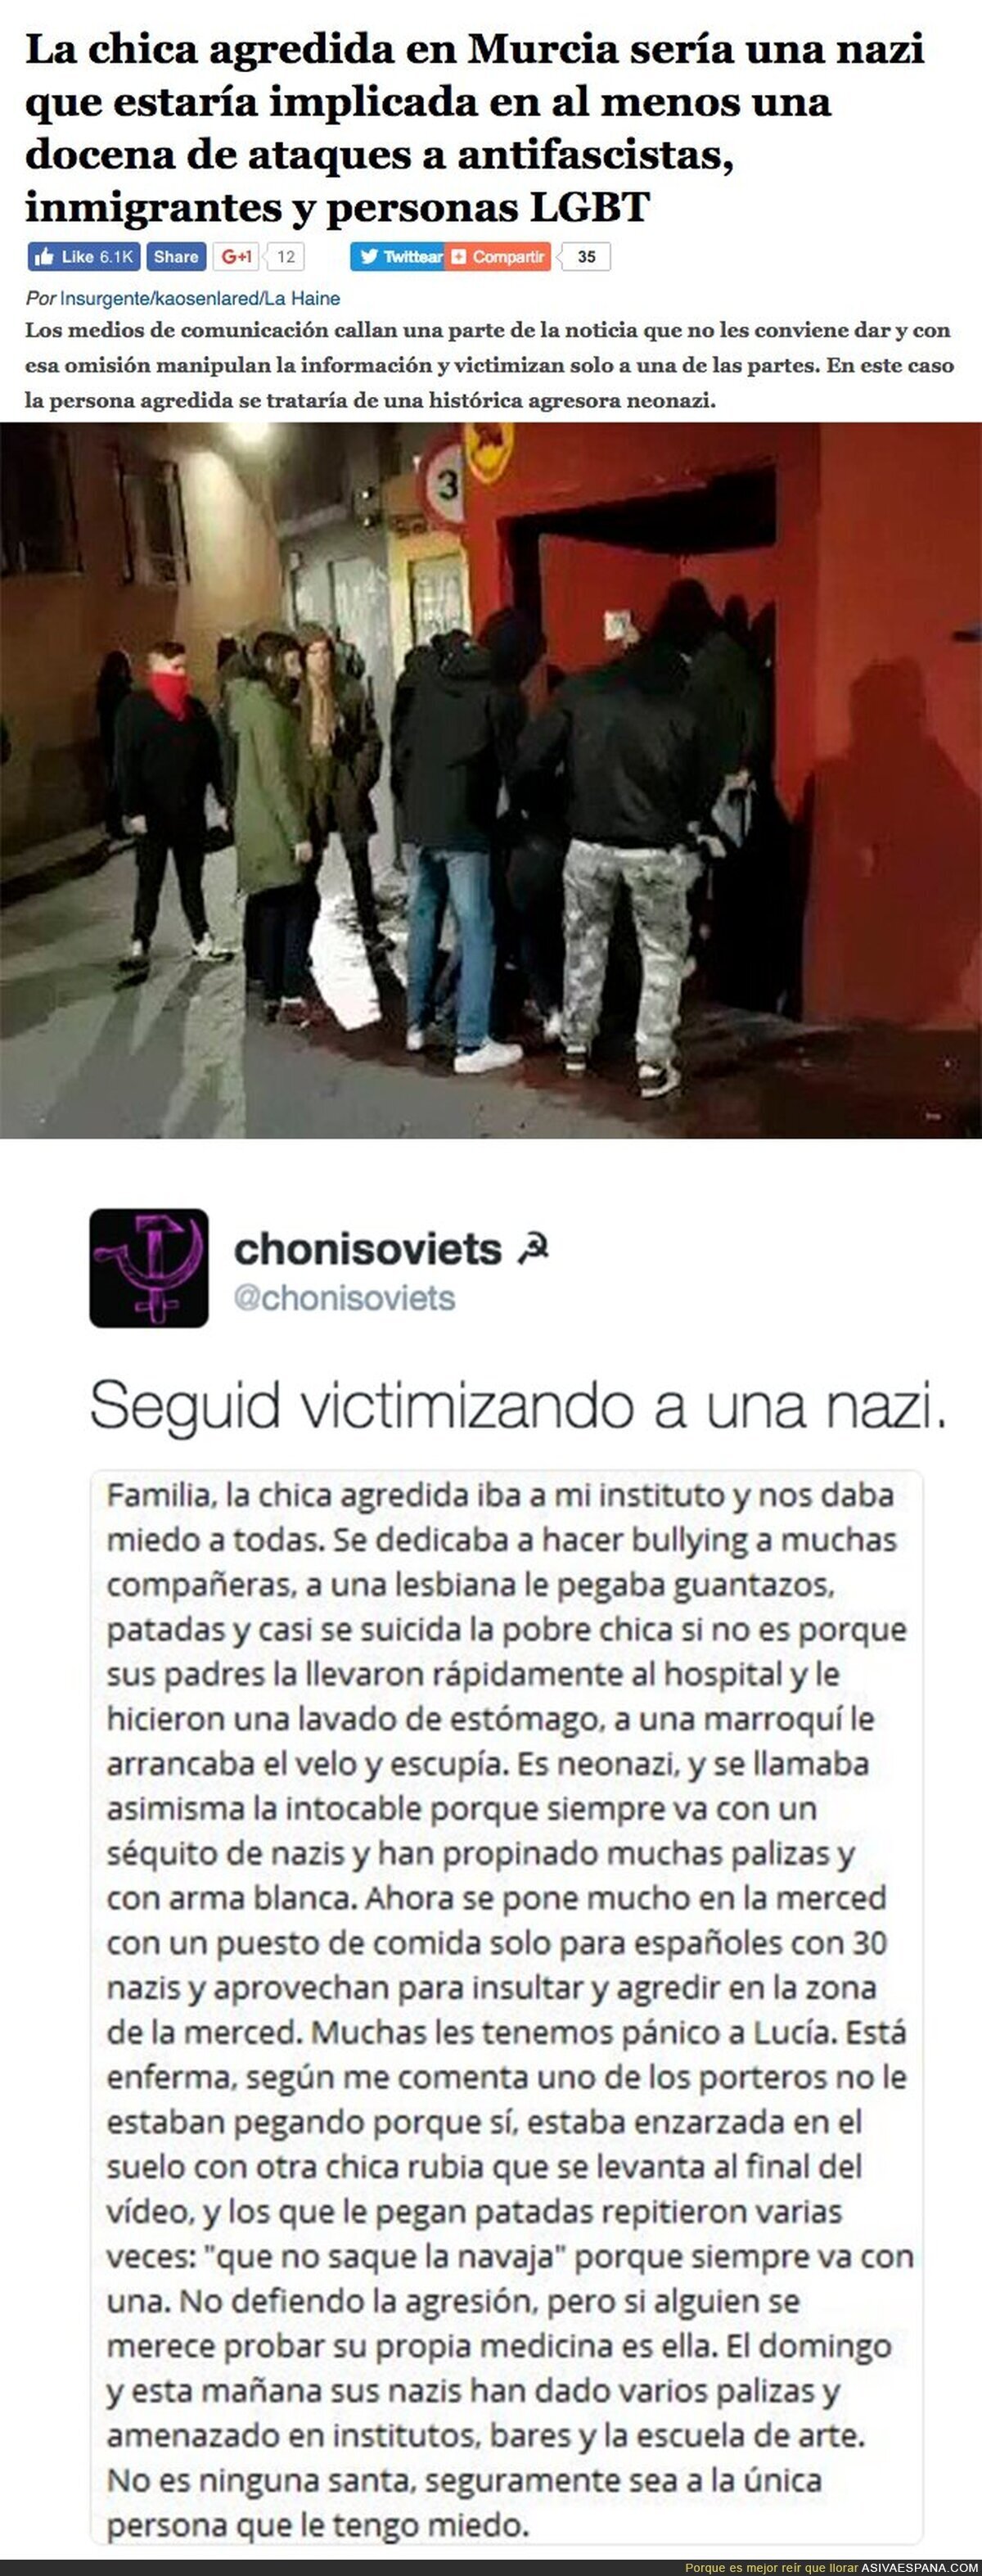 La historia que no cuentan los medios sobre la chica agredida en Murcia por antifascistas